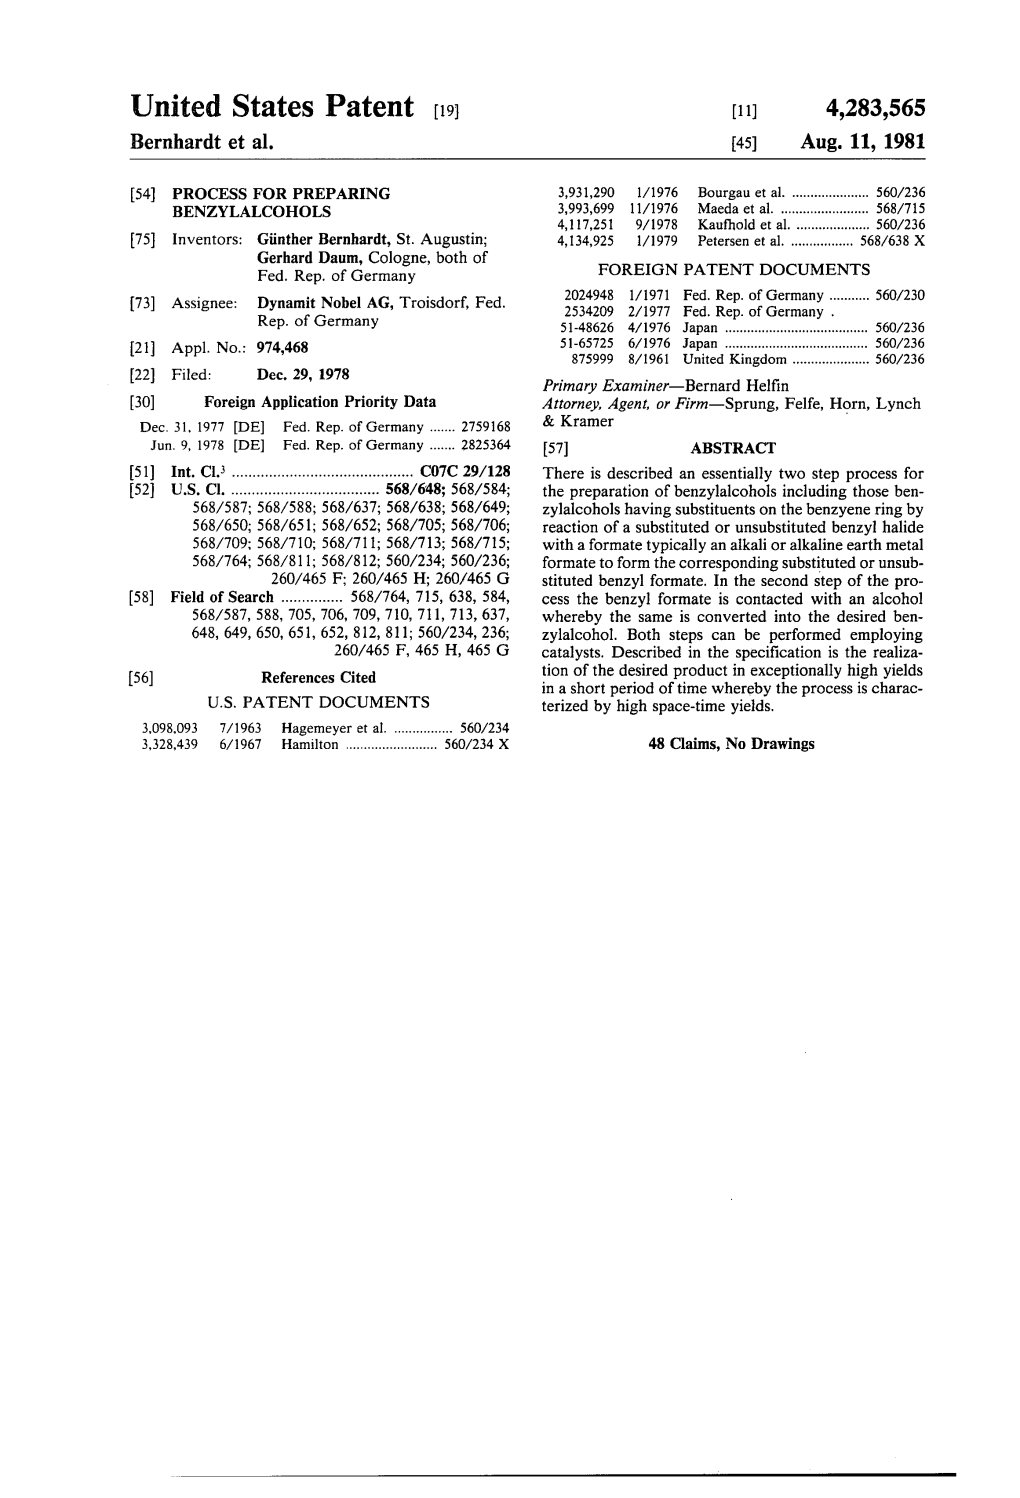 United States Patent (19) 11) 4,283,565 Bernhardt Et Al